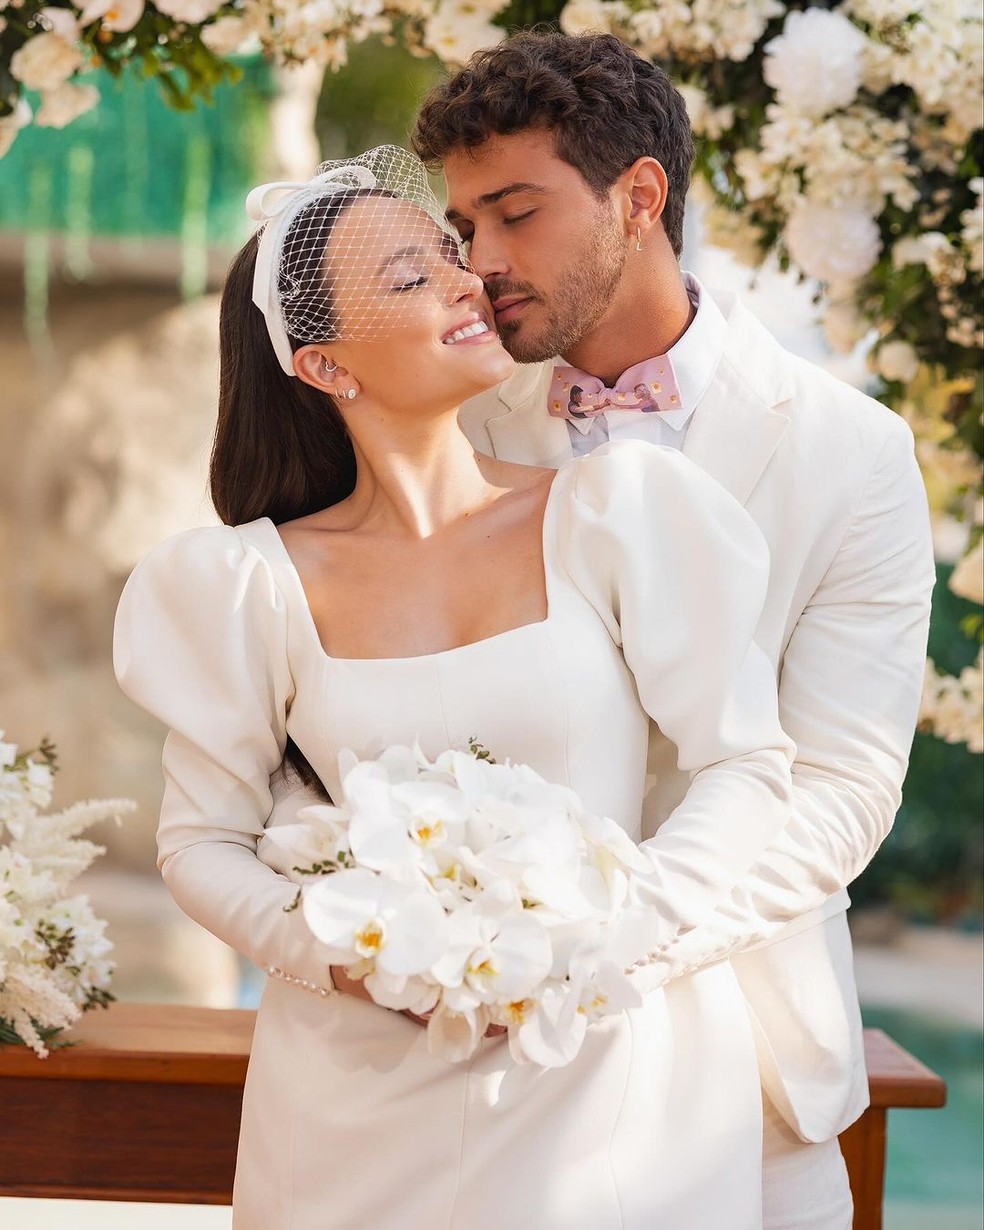 Larissa Manoela está casada com André Luiz Frambach — Foto: Reprodução Instagram